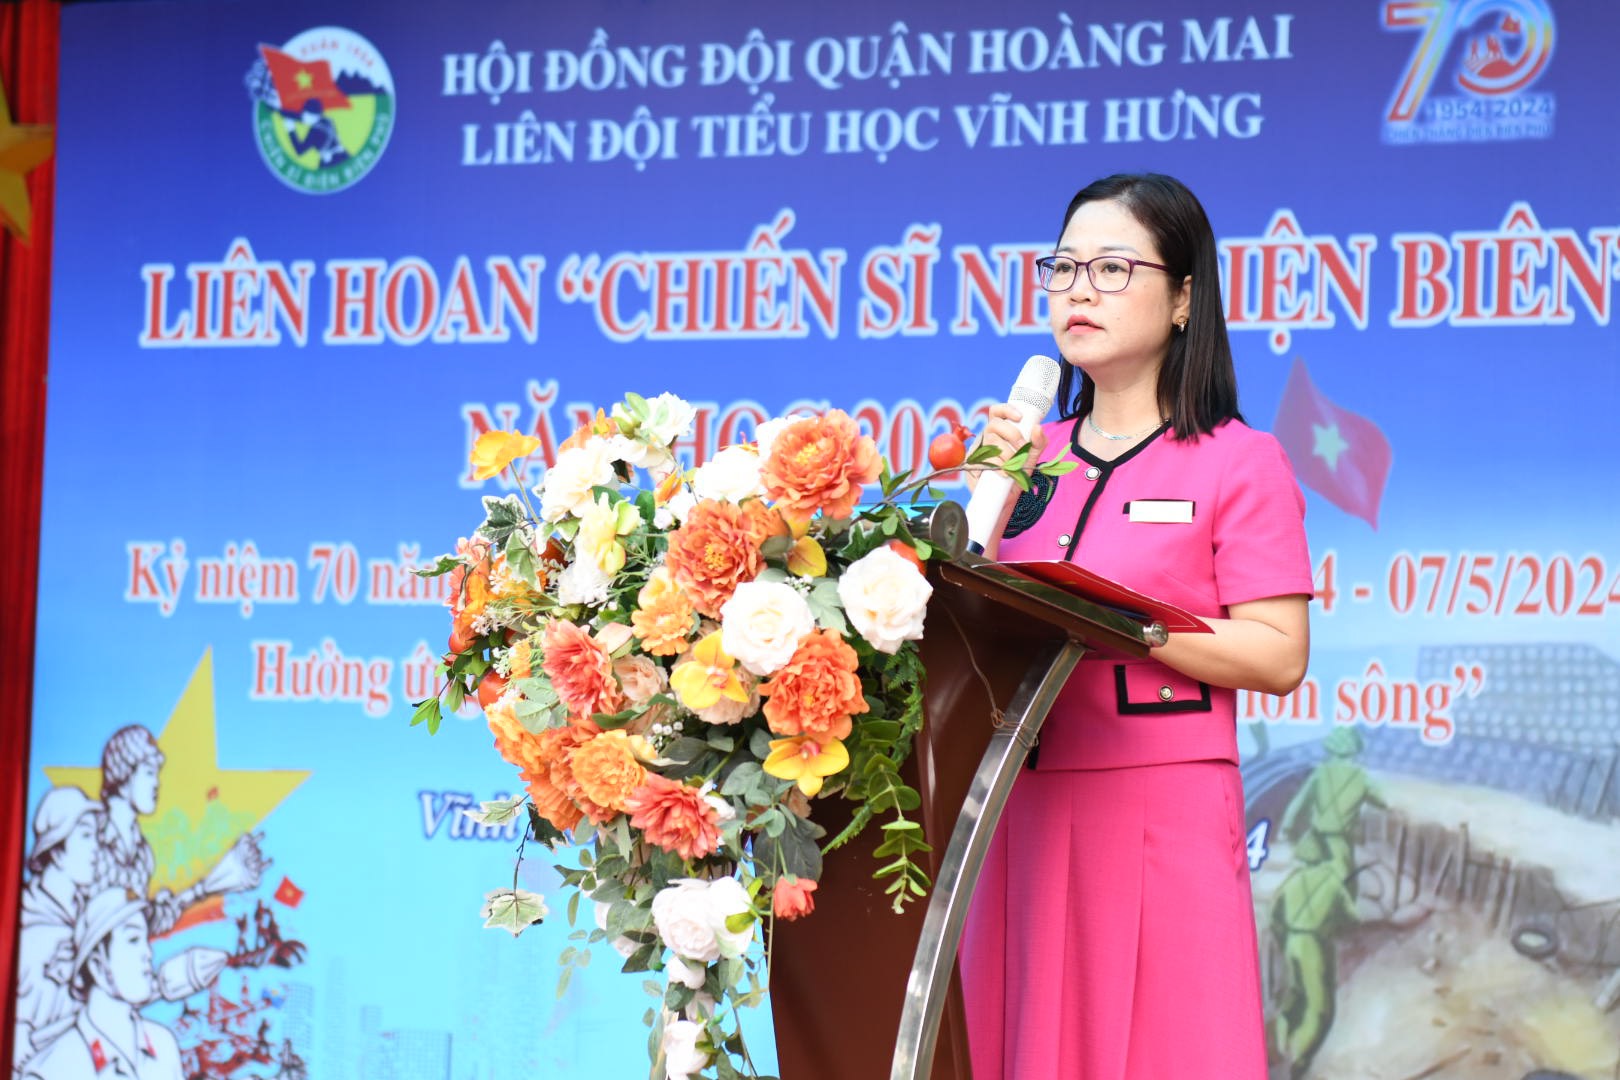 Nhà giáo Nguyễn Thị Nga - Phó Hiệu trưởng trường Tiểu học Vĩnh Hưng phát biểu tại Liên hoan.